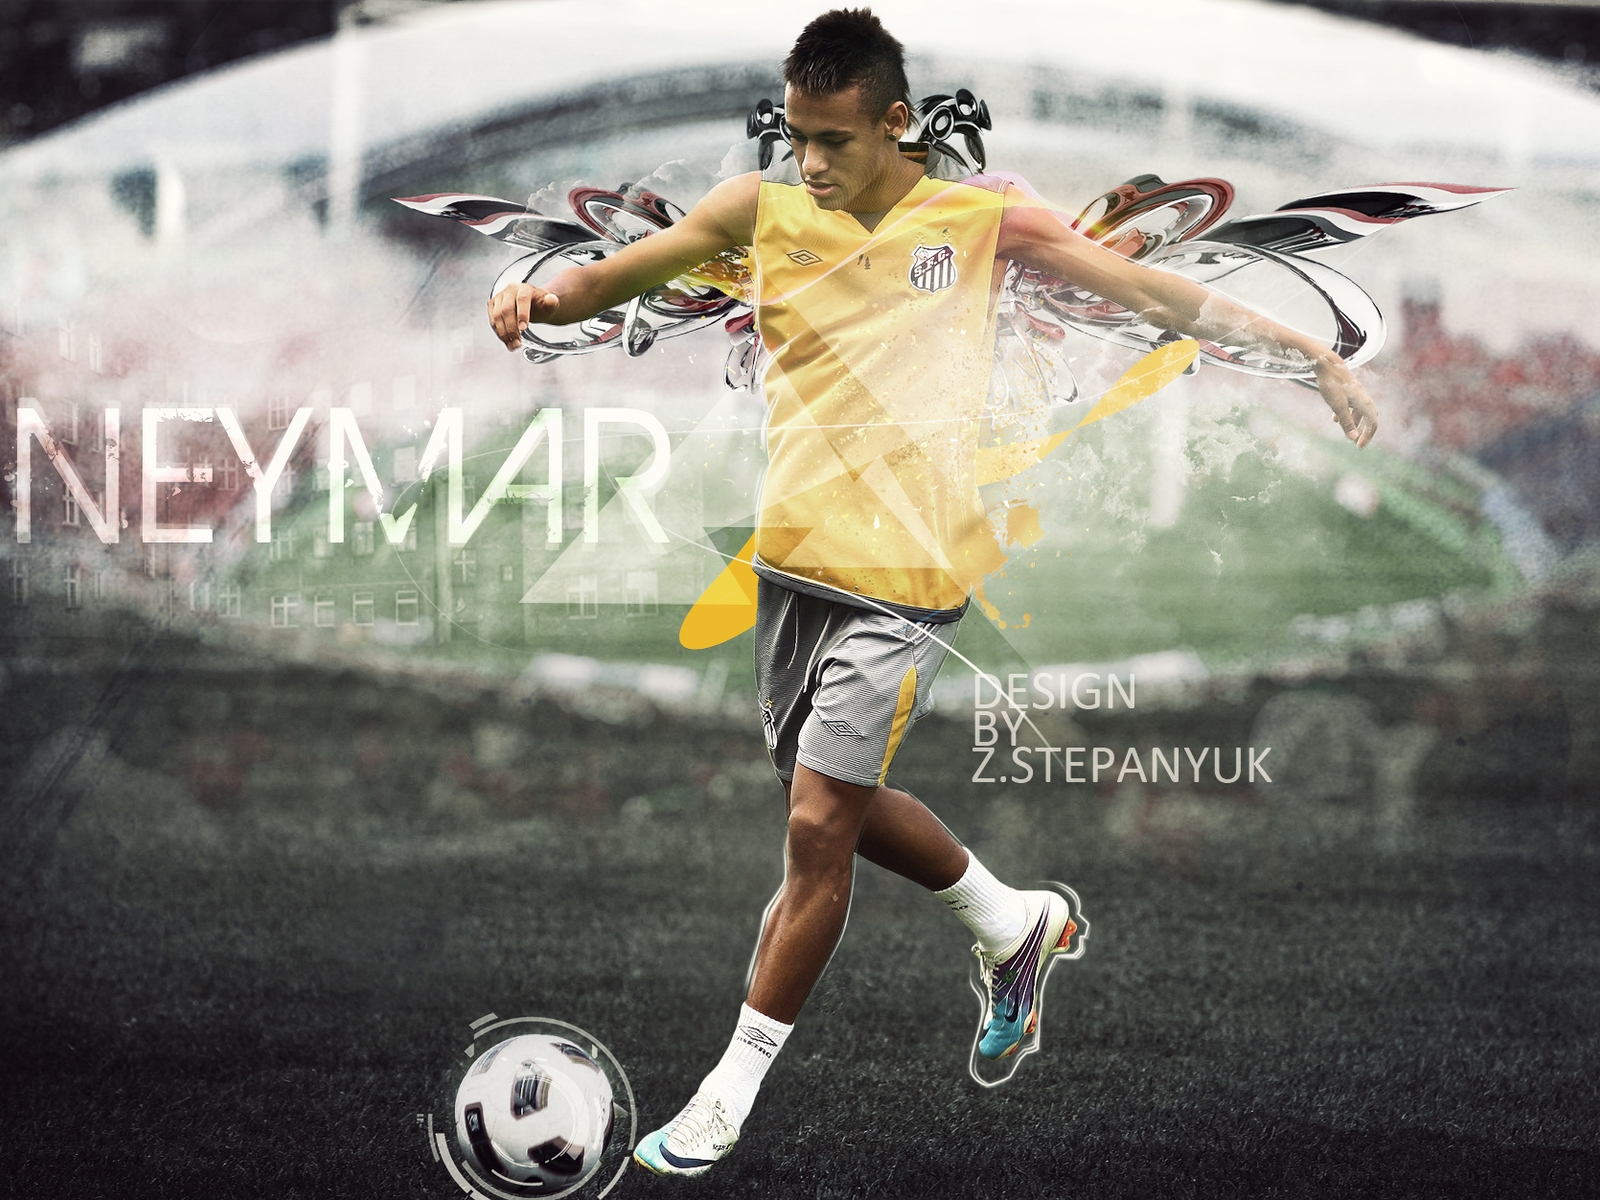 Neymar da Silva Santos for 1600 x 1200 resolution